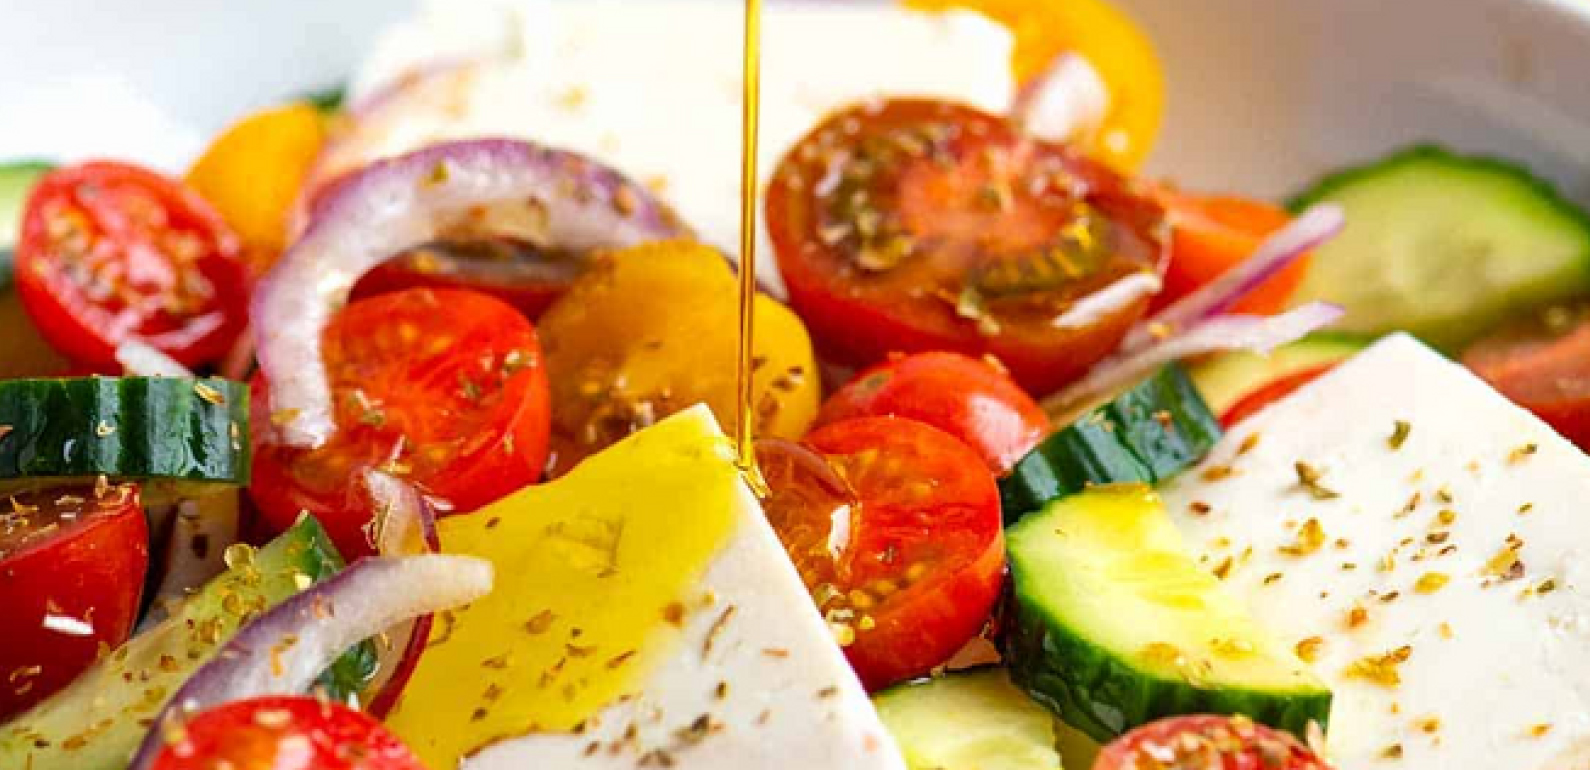 SALADE GRECQUE : Recettes culinaires grecques - Recettes crétoises à l'huile d'olive